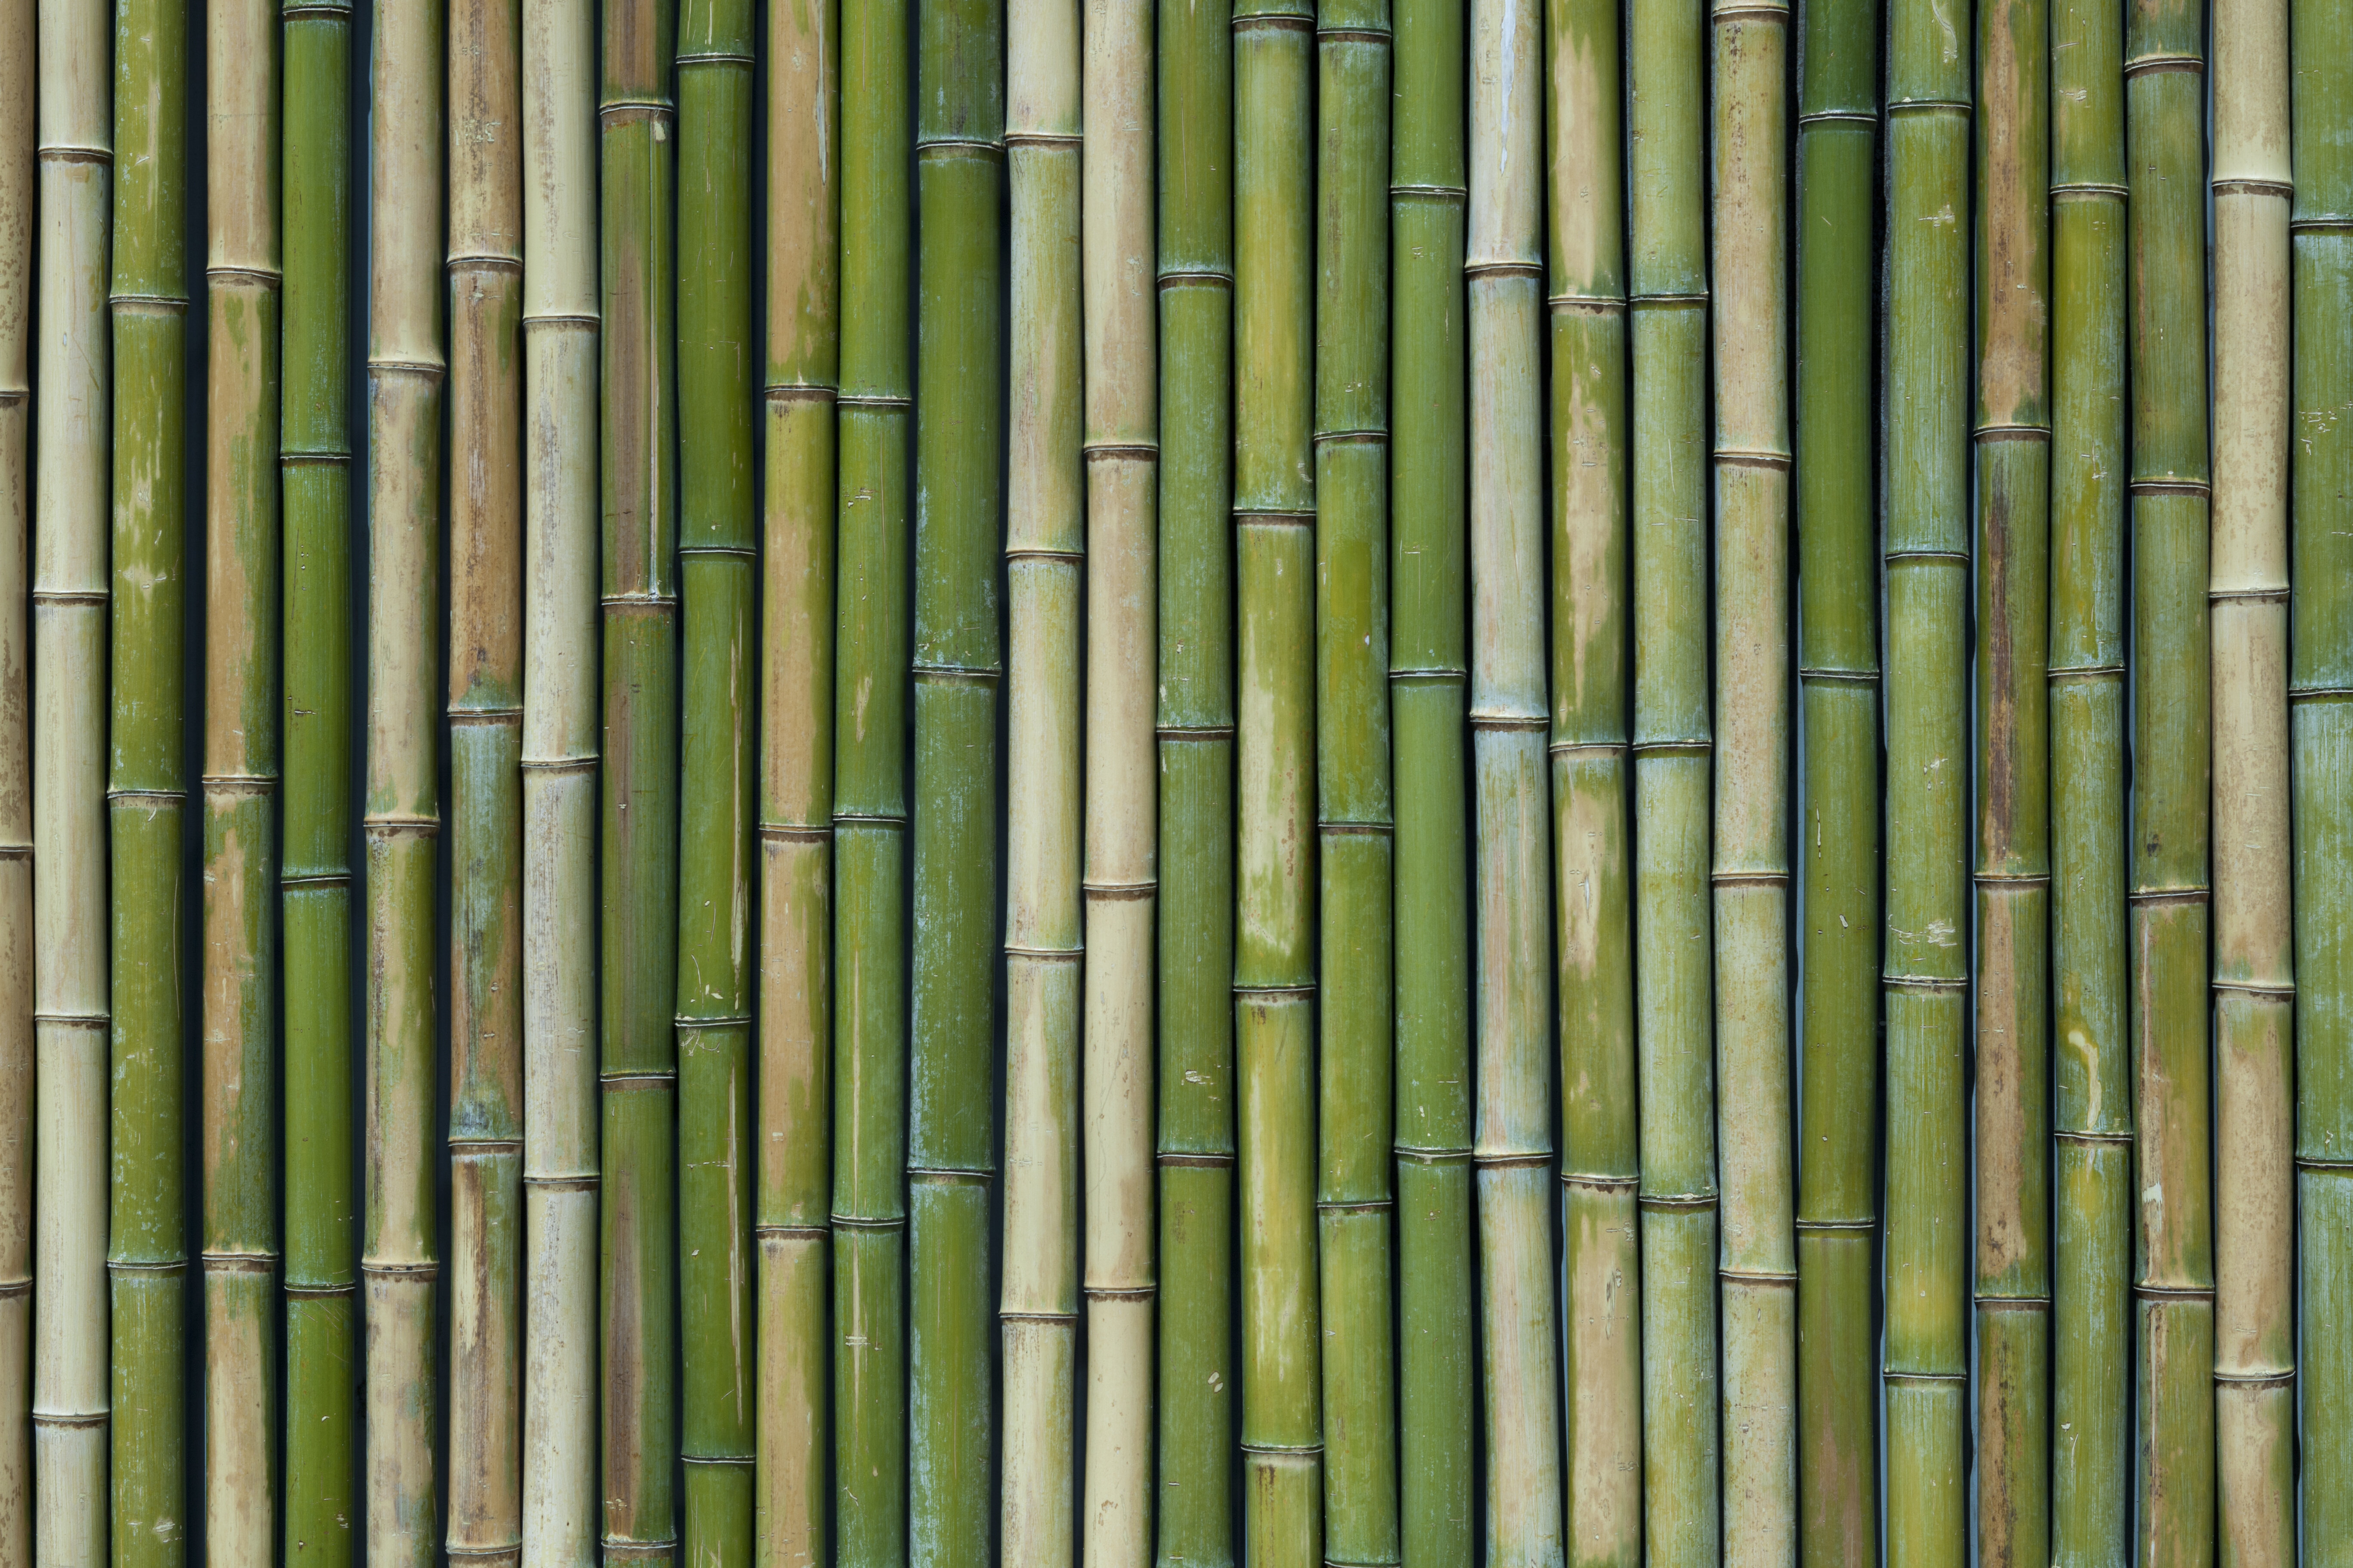 Viele Bambusrohre nebeneinander in Reih und Glied.